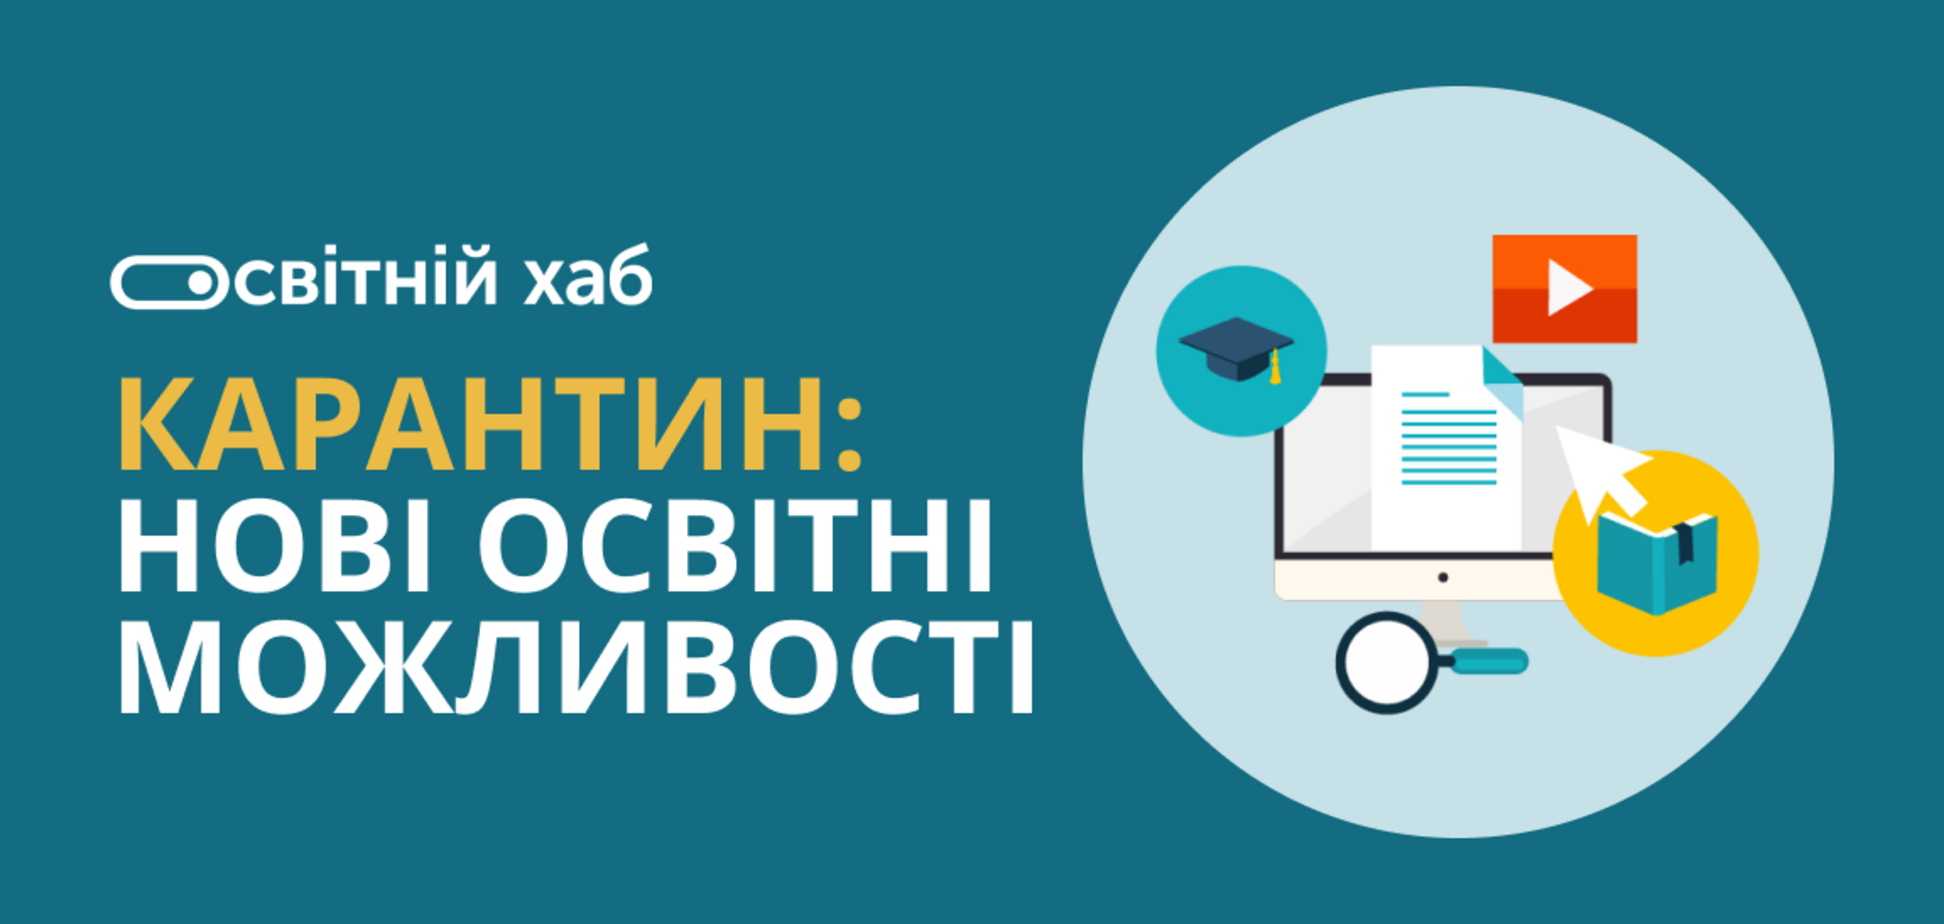 В Украине для преподавателей появилась возможность создавать собственные онлайн-курсы бесплатно